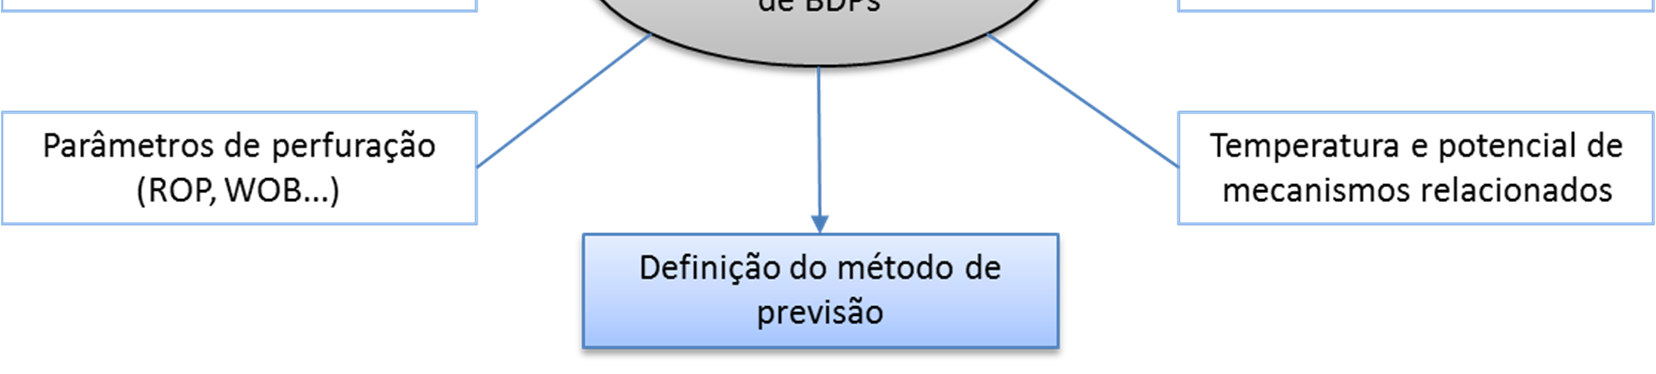 Análise integrada e definição de método de previsão A Figura 3.17 ilustra as análises propostas para a compreensão do comportamento das pressões e tomadas de decisão quanto à metodologia de análise.